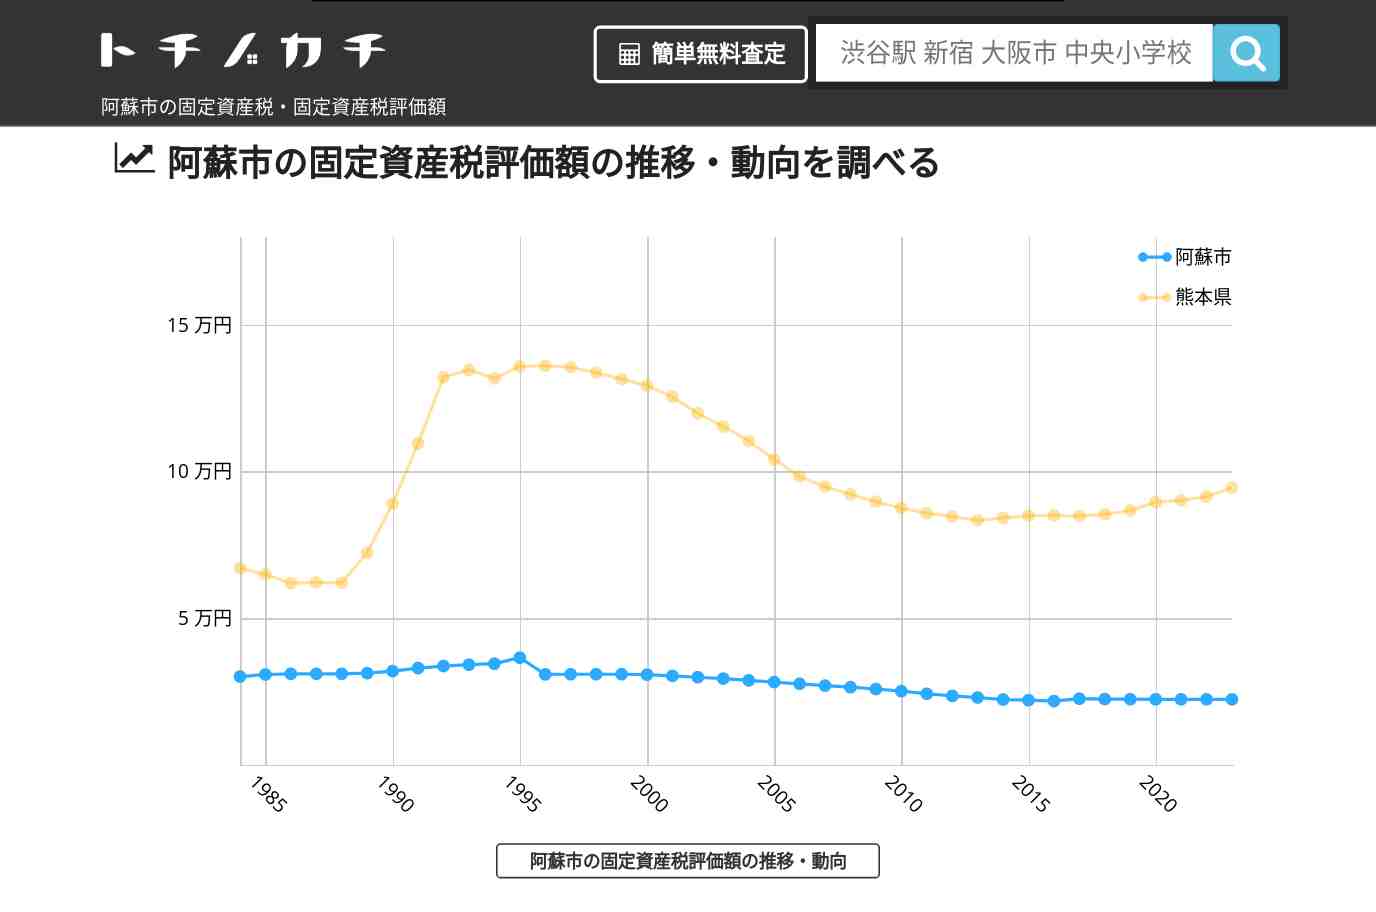 阿蘇西小学校(熊本県 阿蘇市)周辺の固定資産税・固定資産税評価額 | トチノカチ